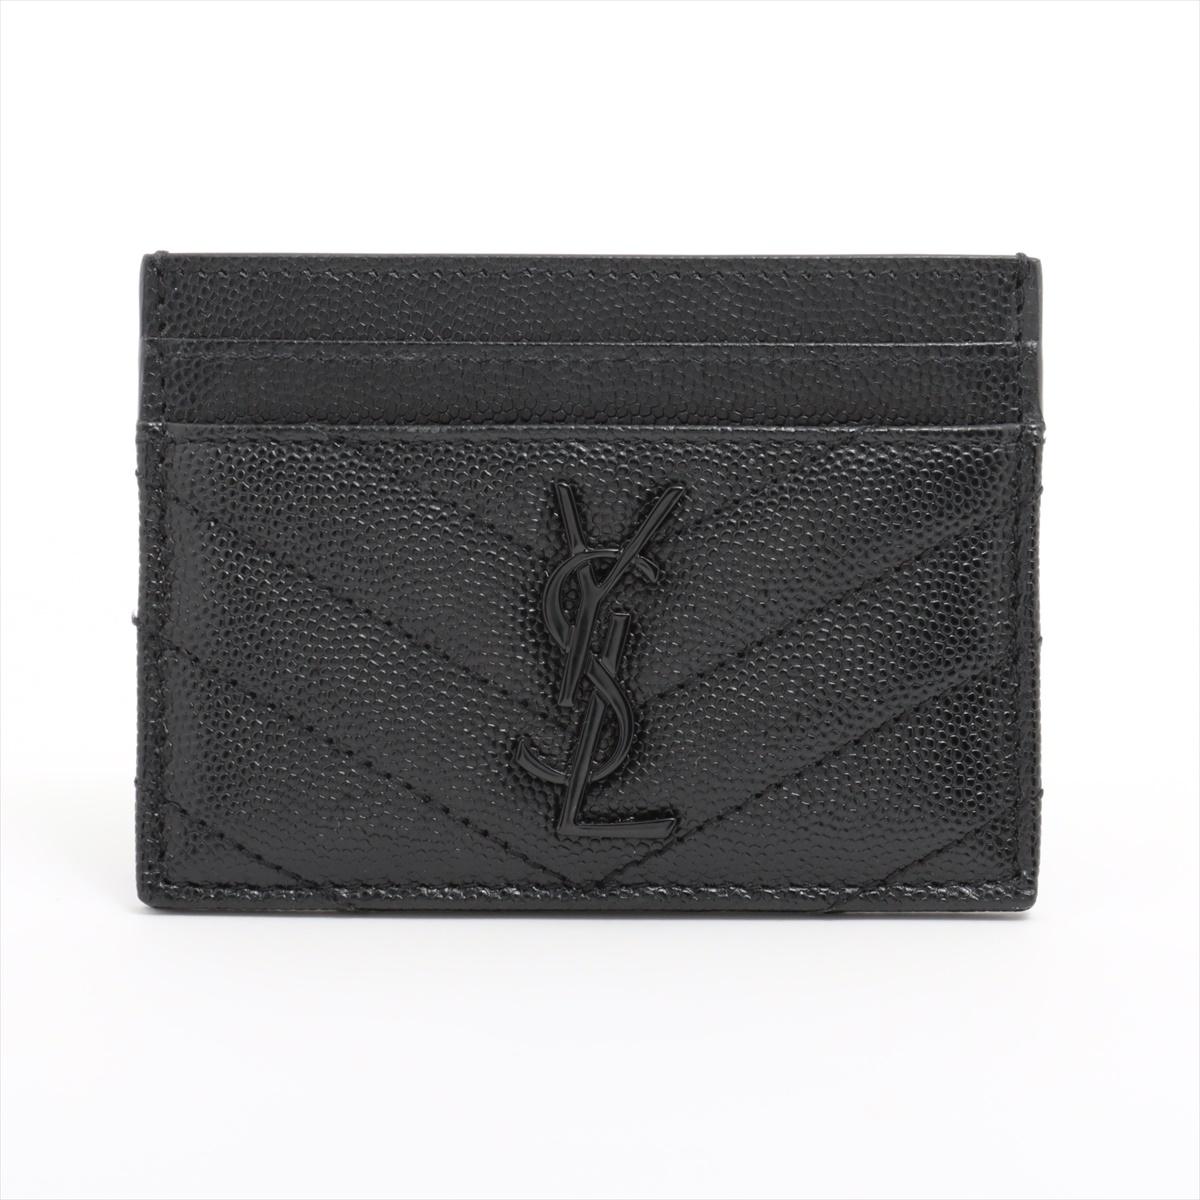 Le porte-cartes en cuir noir à piqûres en V de Saint Laurent est un accessoire élégant et sophistiqué qui illustre le design minimaliste et luxueux de la marque. Fabriqué en cuir lisse, cet étui à cartes est orné d'une piqûre en forme de V sur le